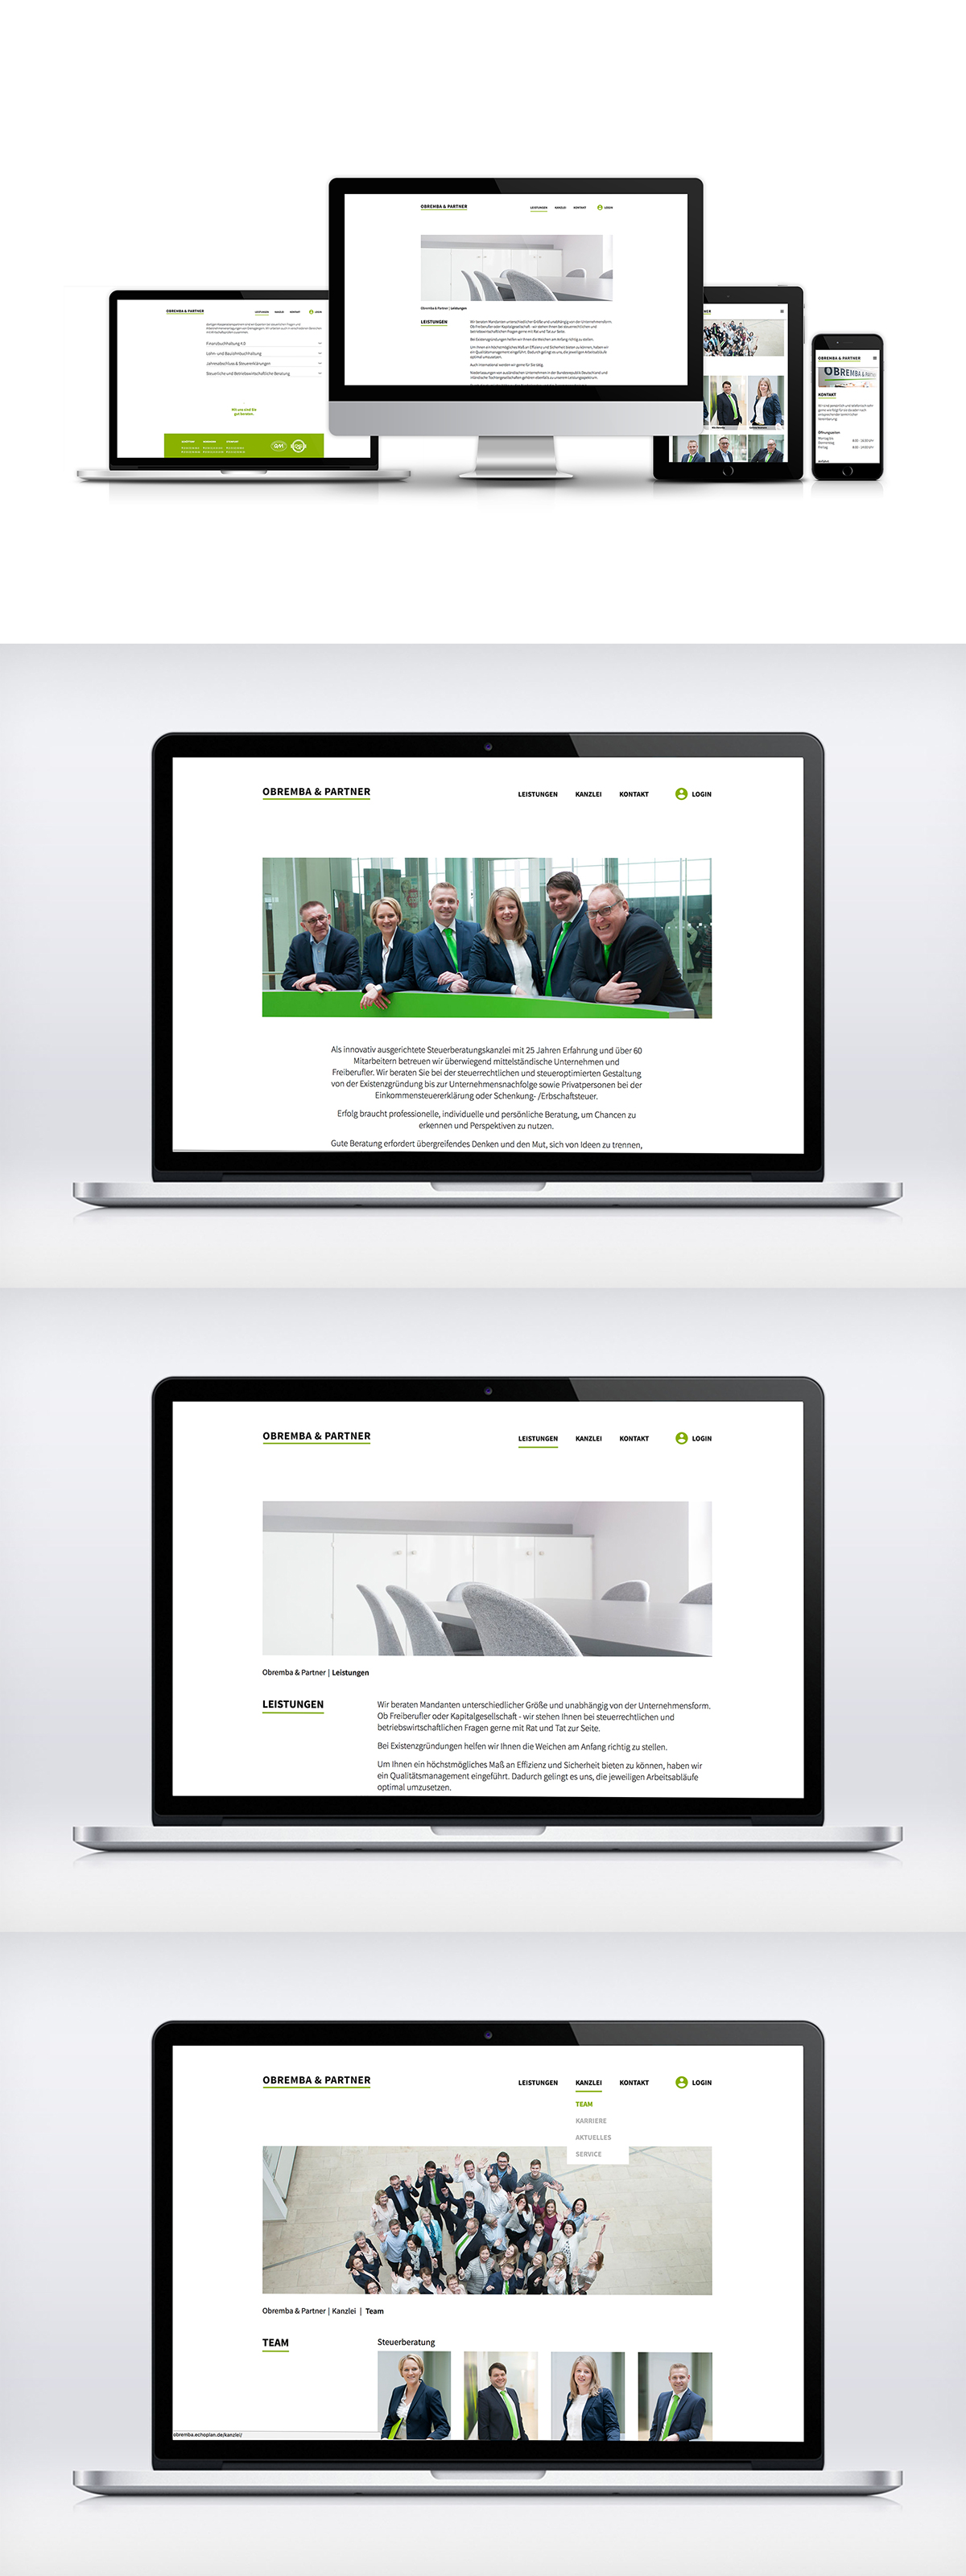 obremba & partner steuerberatung Responsive webdesign Responsive Webdesign Office White minimalist